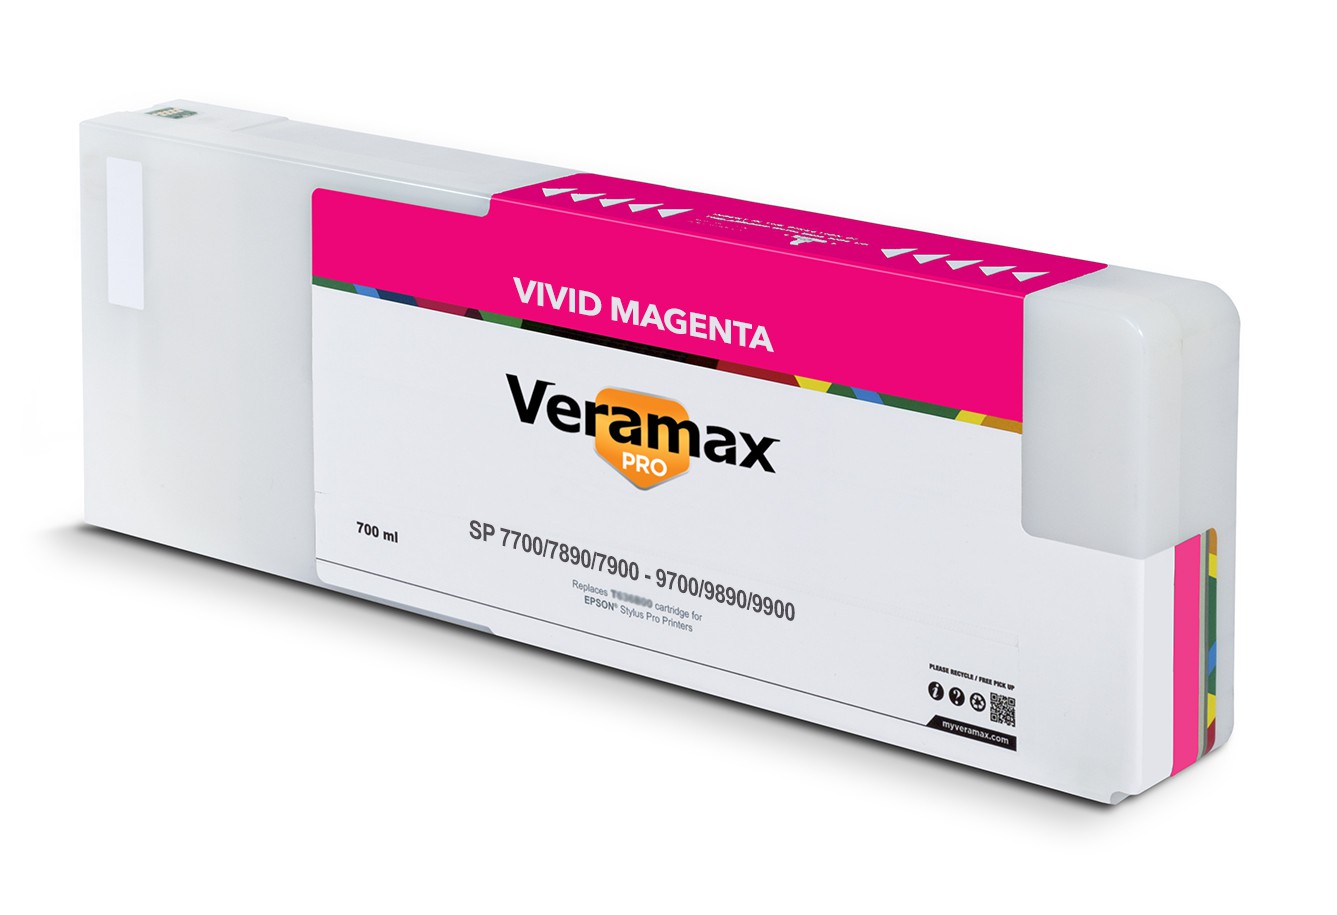 Veramax PRO SP 7700/9700 7890/9890 7900/9900 700ml Vivid Magenta